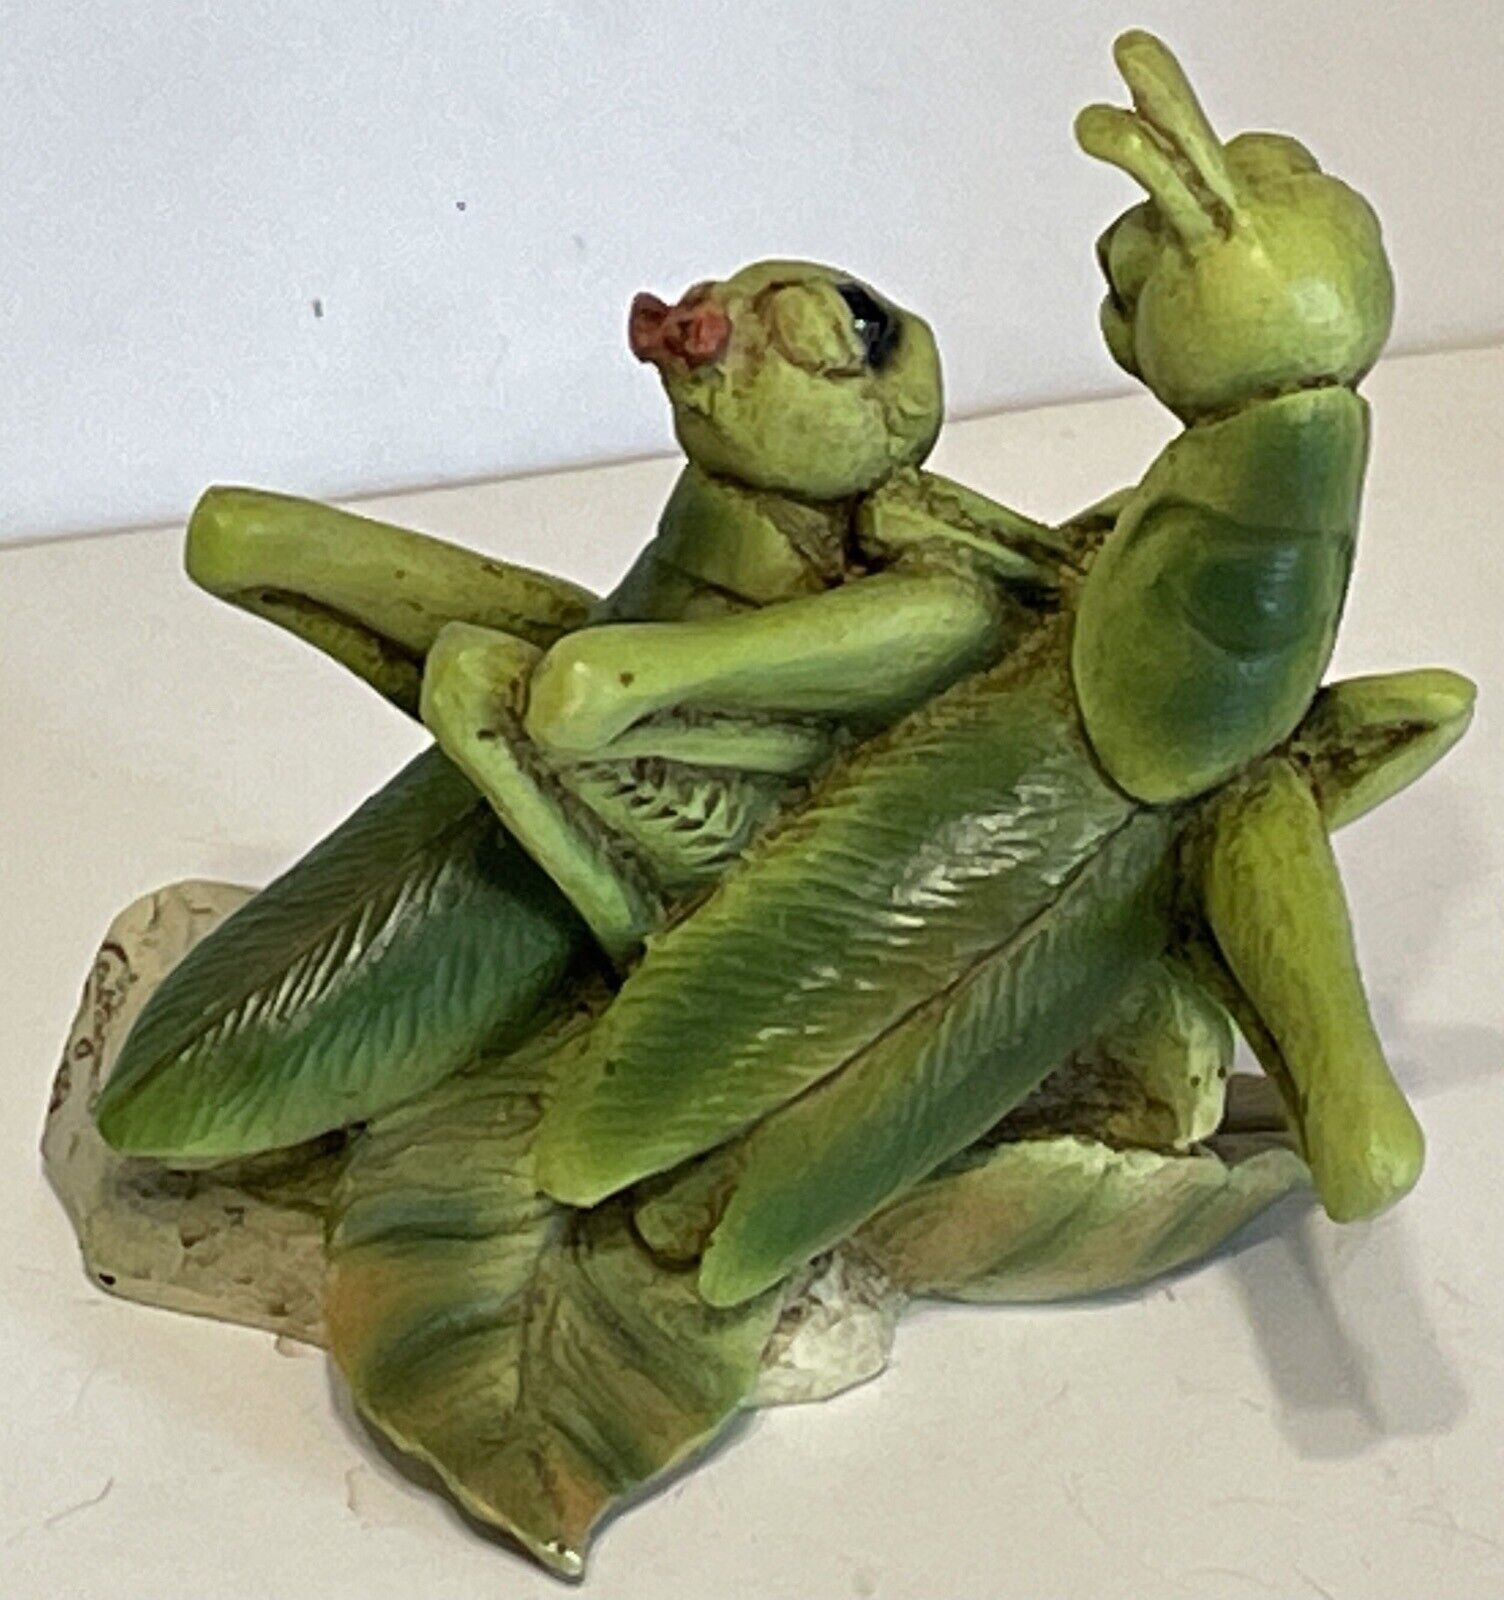 New Grasshopper Lovers Sculptures By Castagna Flower Leaf Figurine COA Без бренда - фотография #3